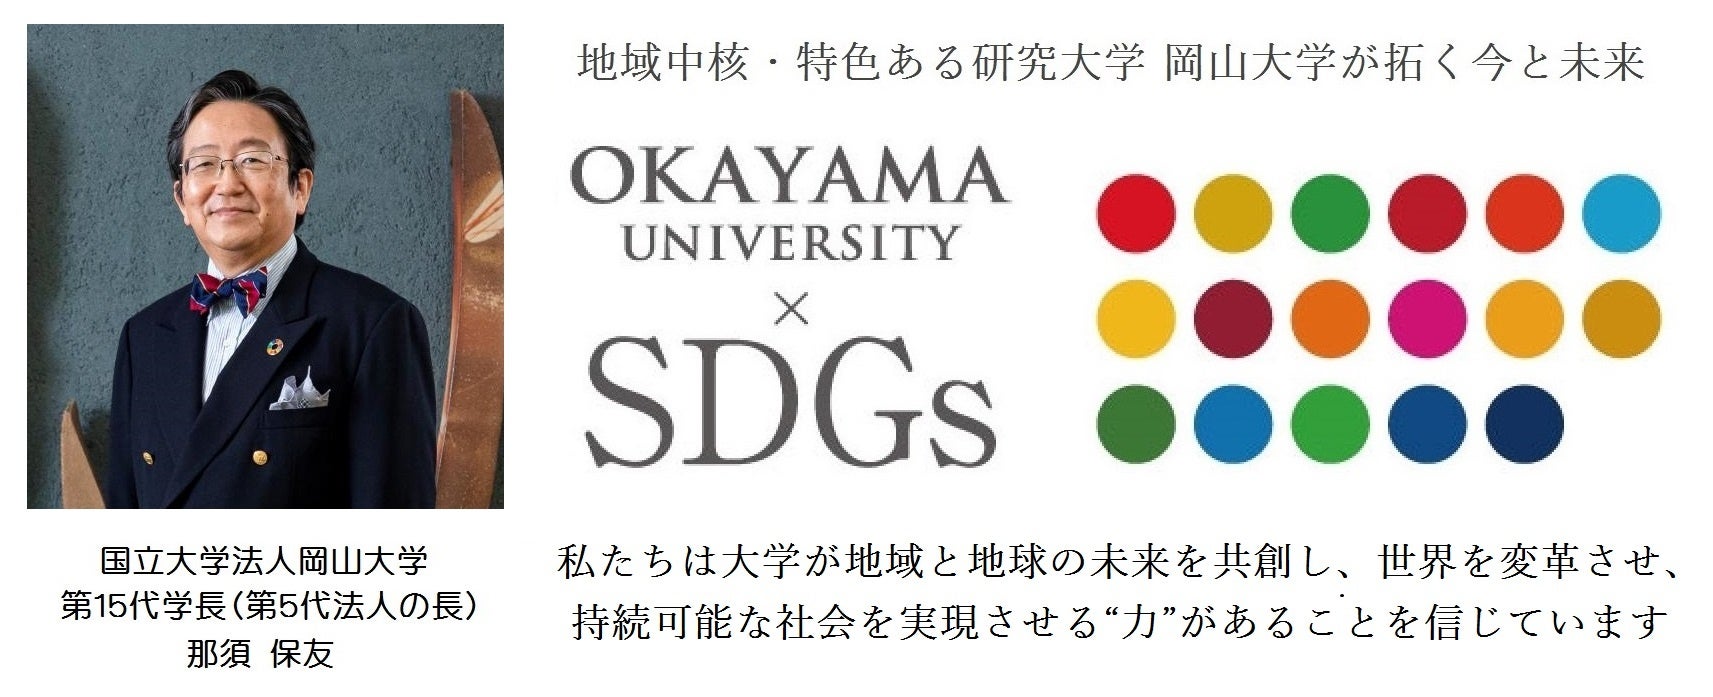 【岡山大学文明動態学研究所】「持続可能な開発教育とは－国際法の歴史から－」の録画配信を開始しました